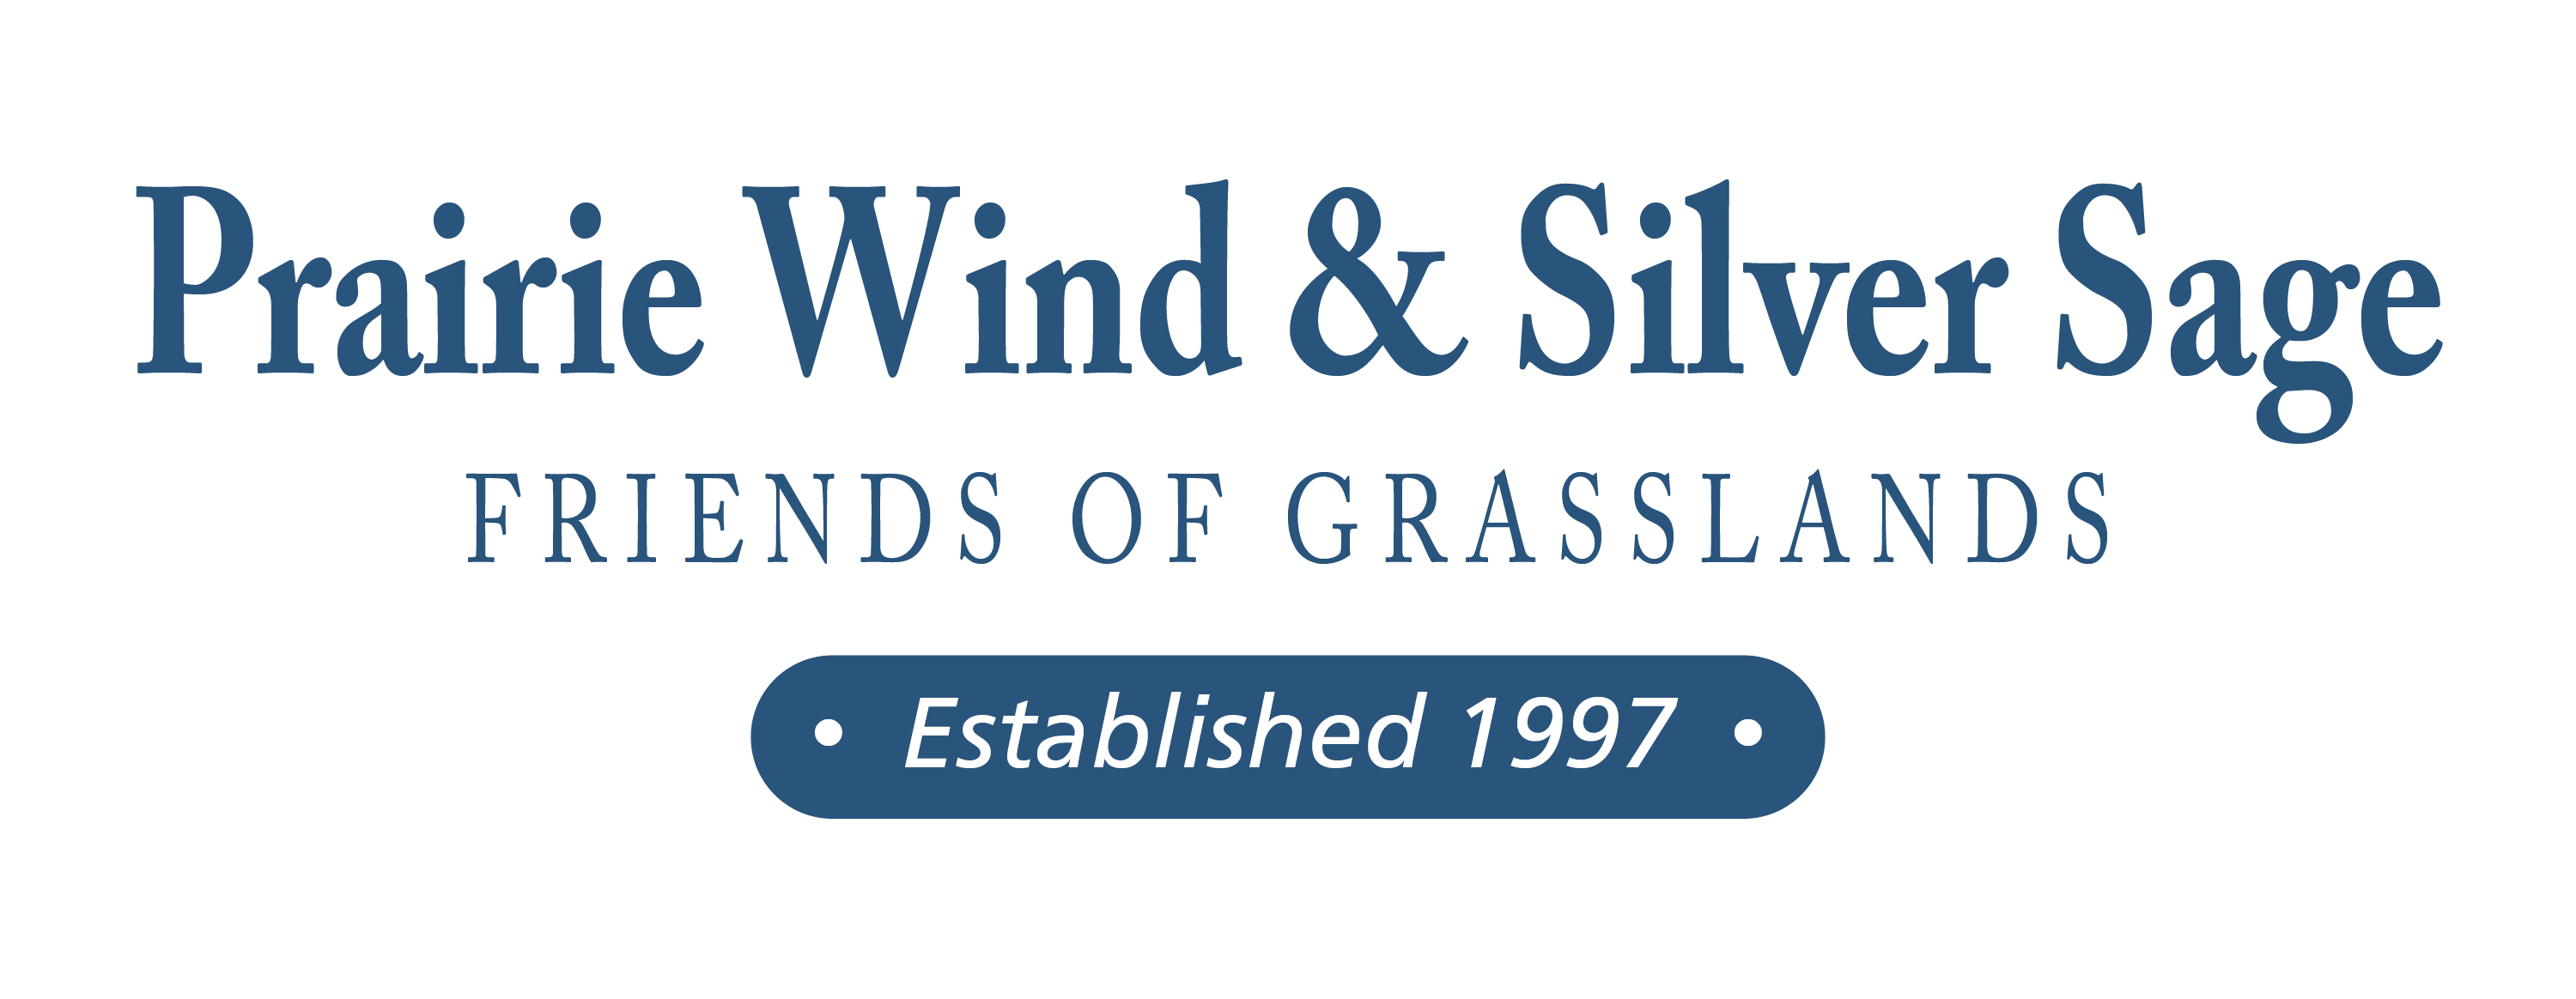 Prairie Wind & Silver Sage logo